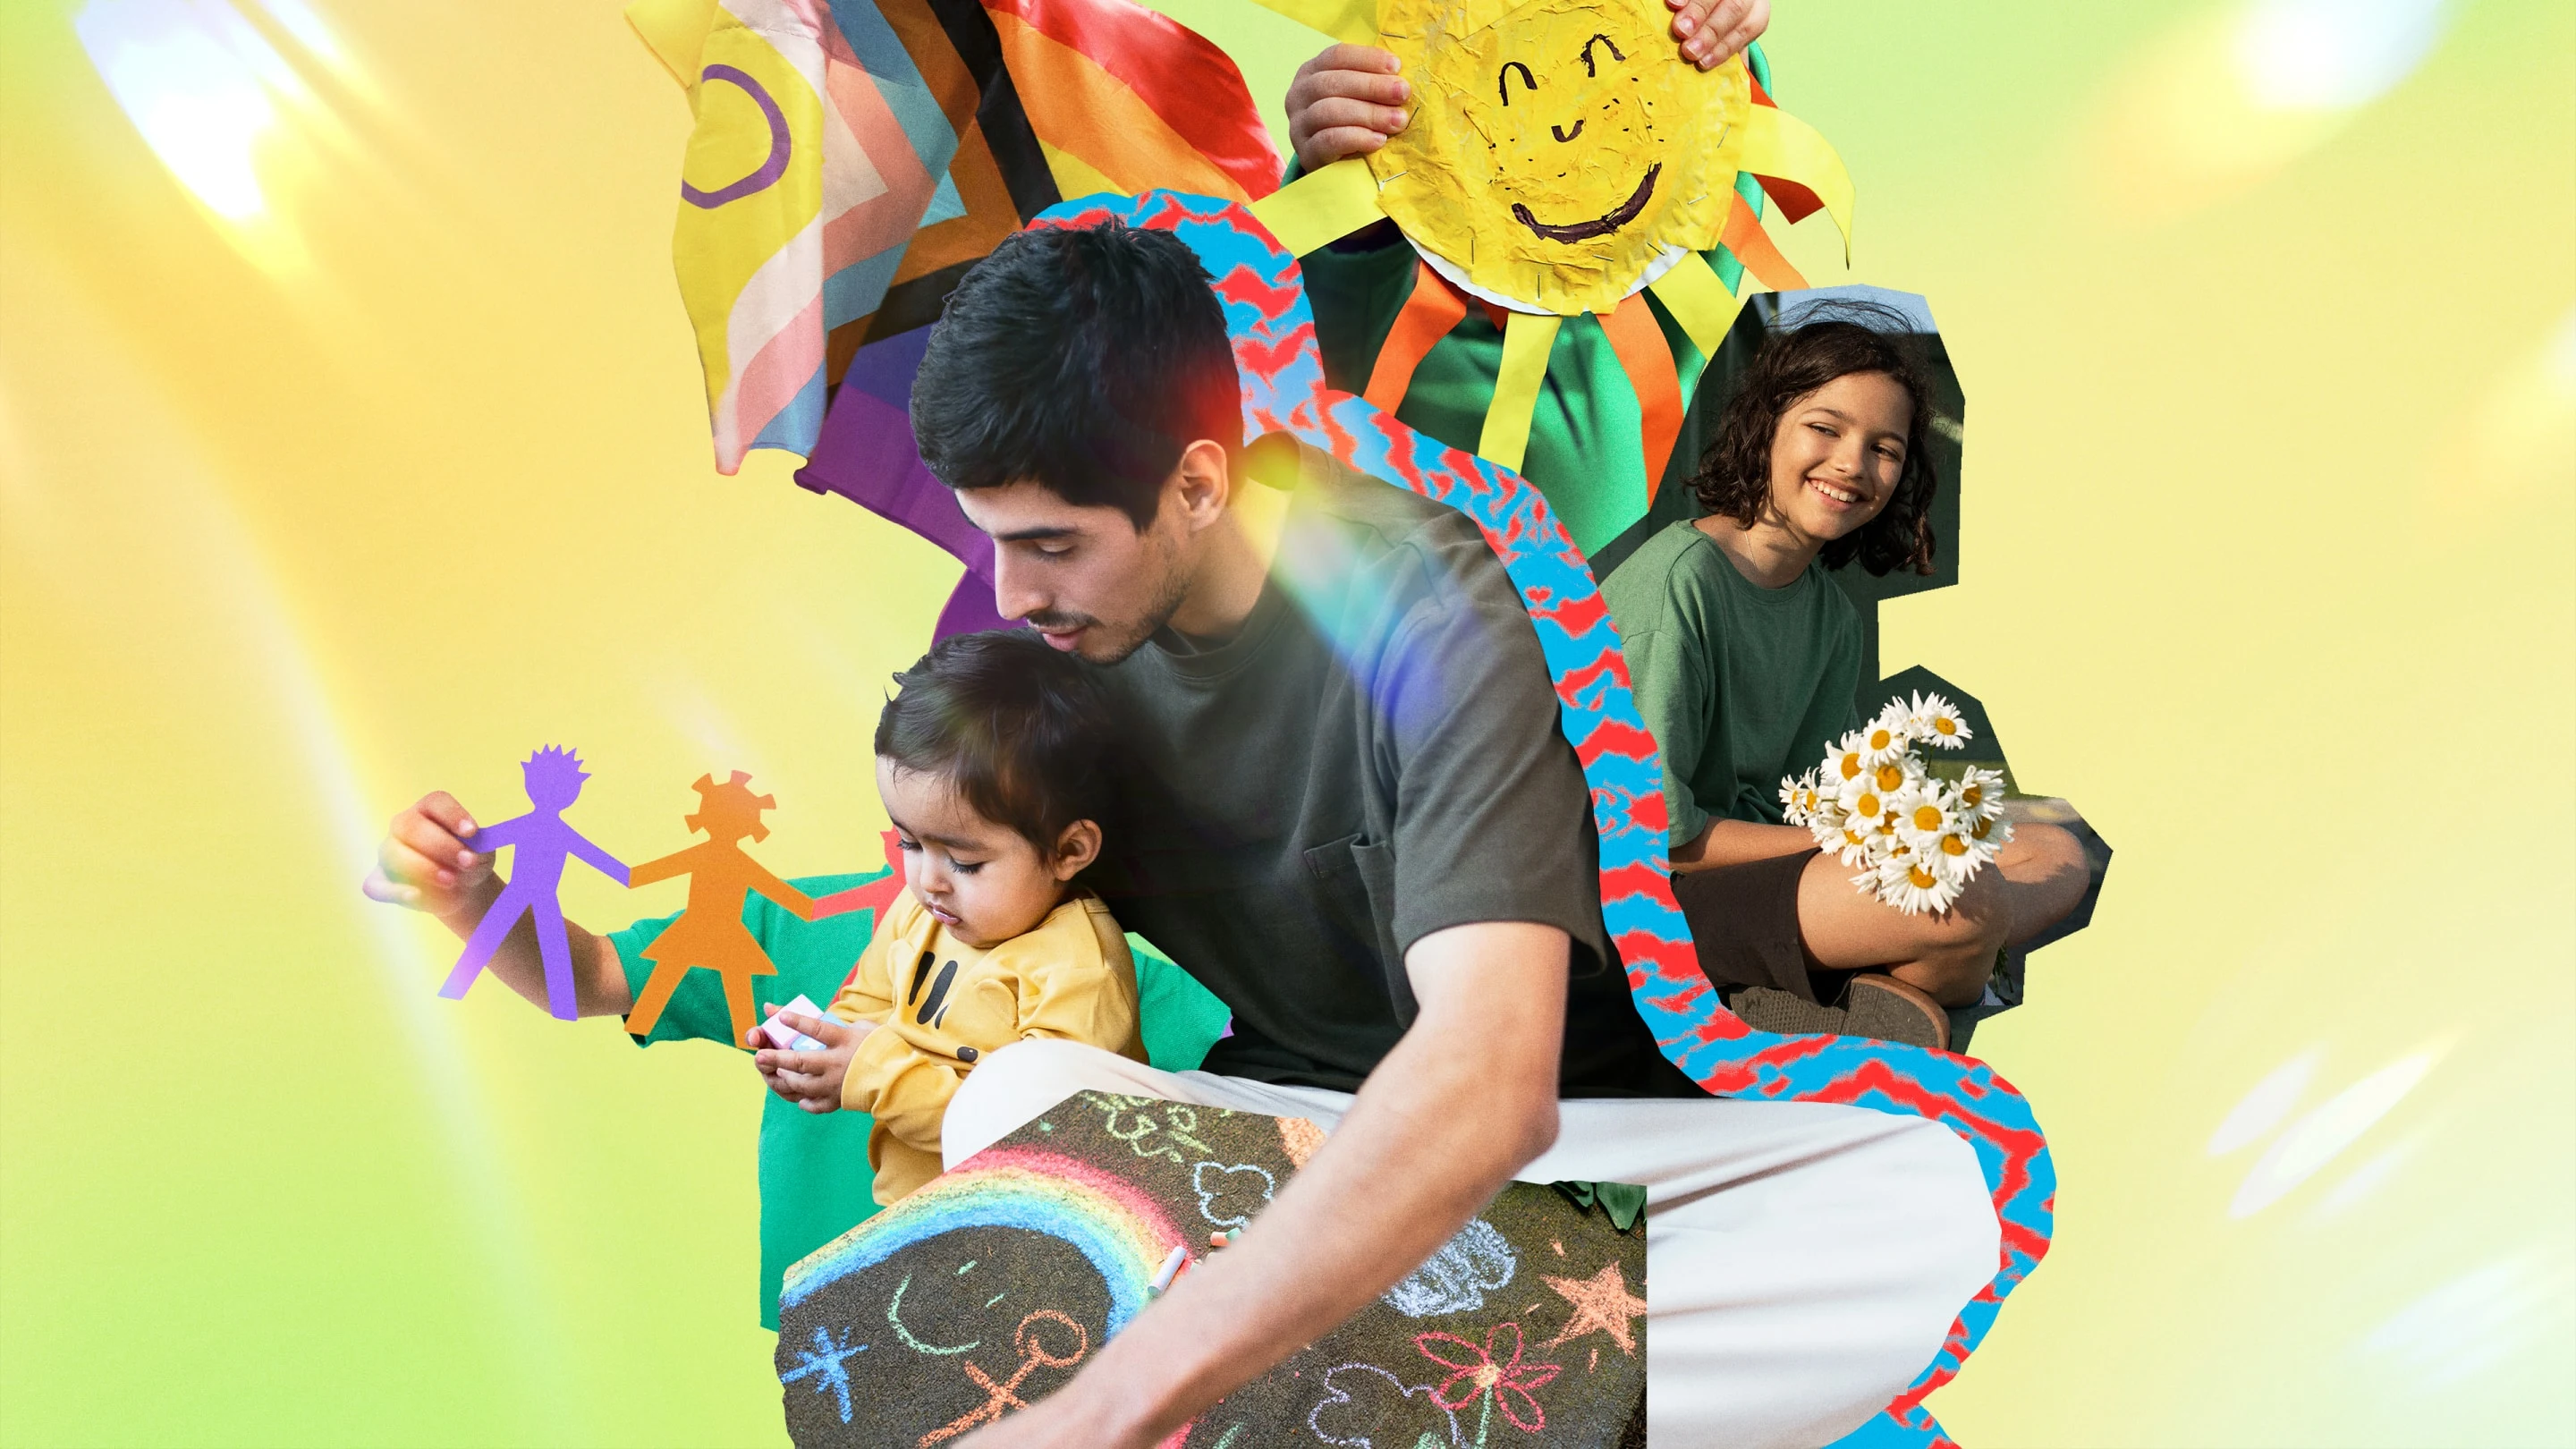 Immagini colorate attinenti ai bambini raffiguranti la bandiera Progress Pride, due bambini latinoamericani e un genitore che si divertono con attività creative.